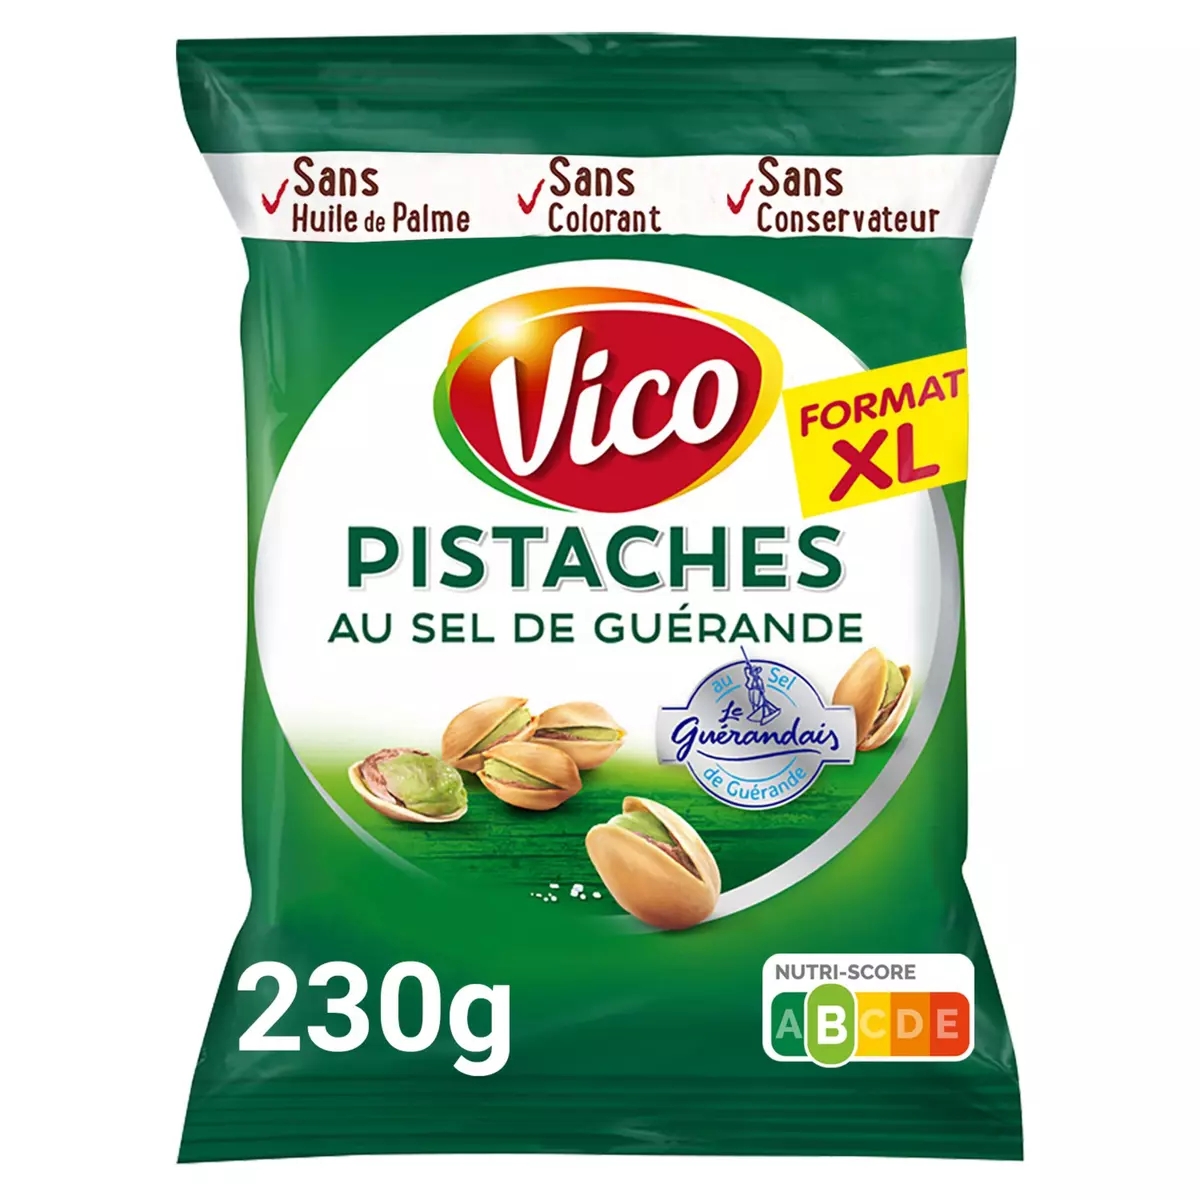 VICO Pistaches au sel de Guérande format XL 230g